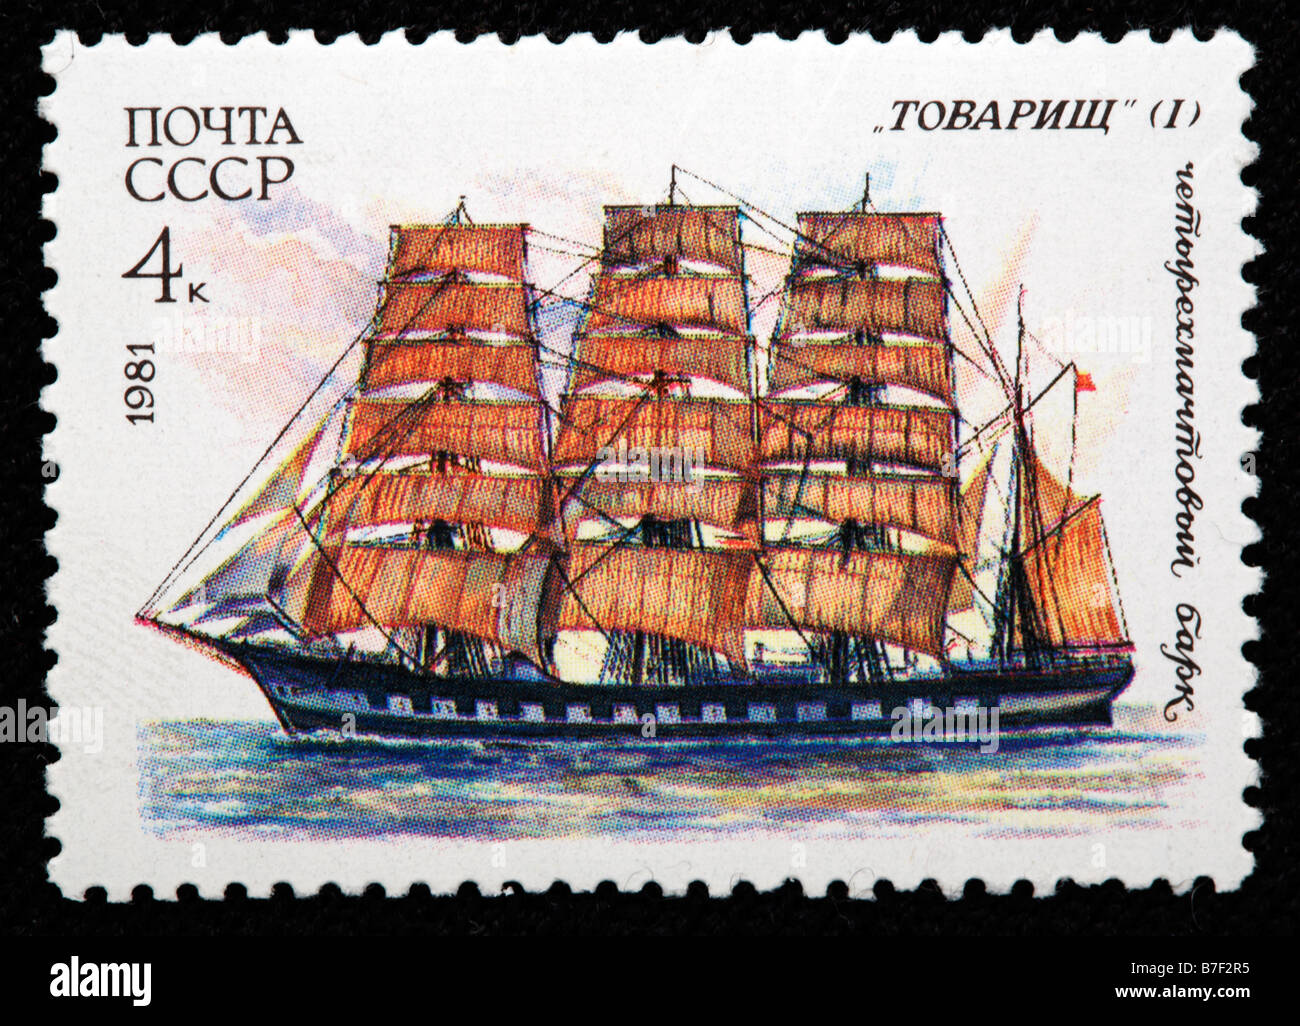 Russische Segel Schiff "Tovarish" Briefmarke UdSSR, Russland, 1981 Stockfoto